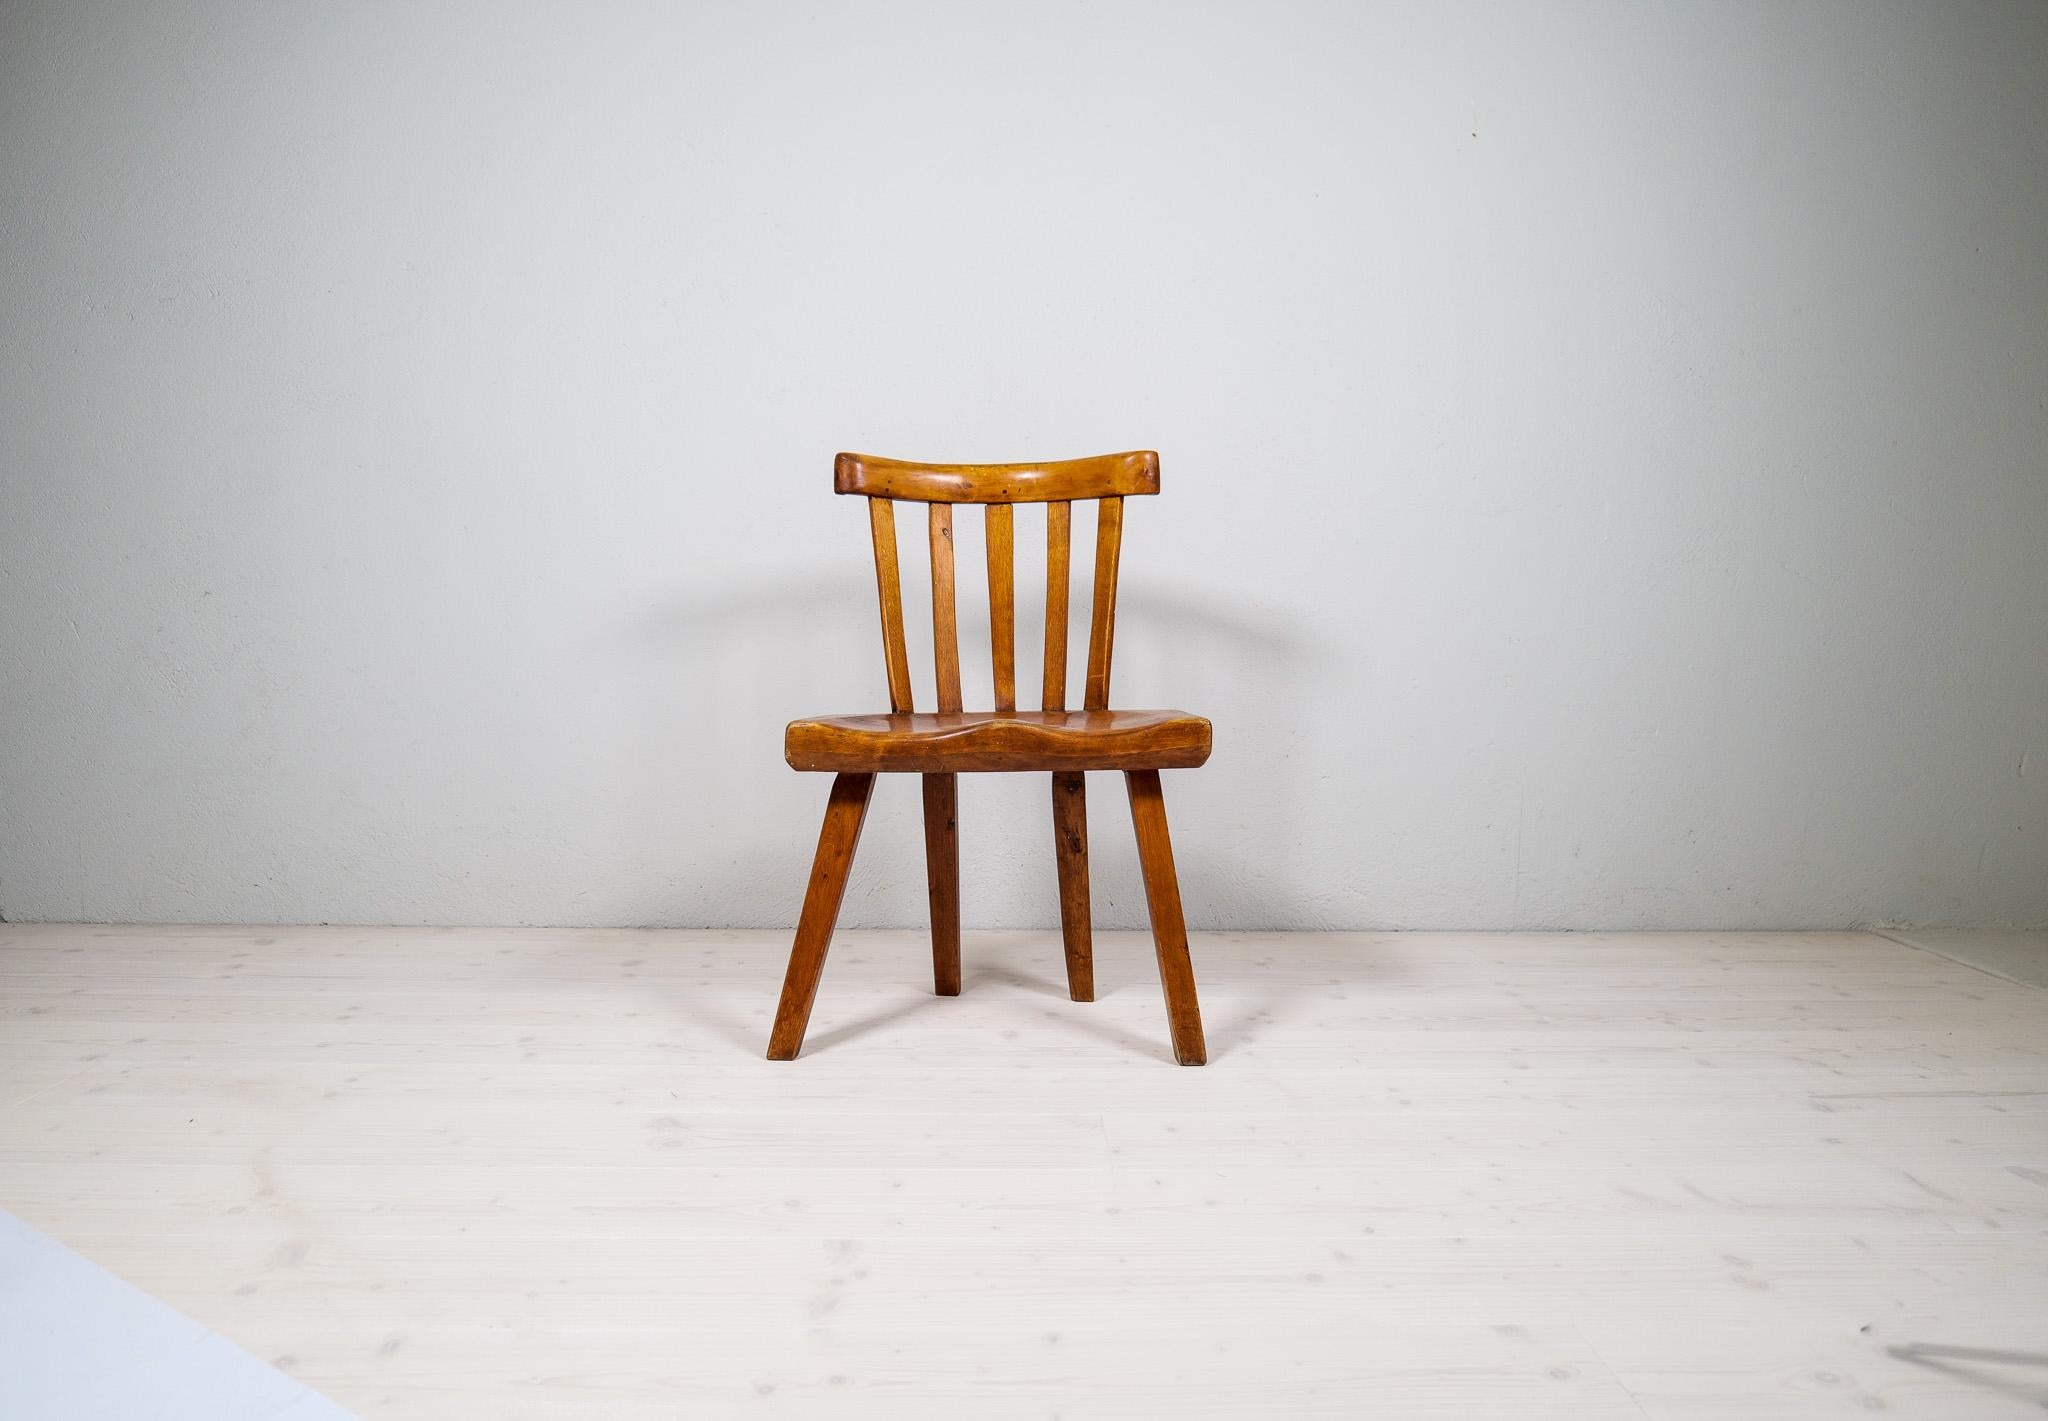 Volkskunst made in Sweden in ihrer besten Form. Dieser Stuhl mit sehr ansprechenden Formen und Patina. Dieser Stuhl aus dem späten 19. Jahrhundert ist ein unverzichtbares Stück für jedes moderne Haus, das etwas Außergewöhnliches haben möchte. Caved